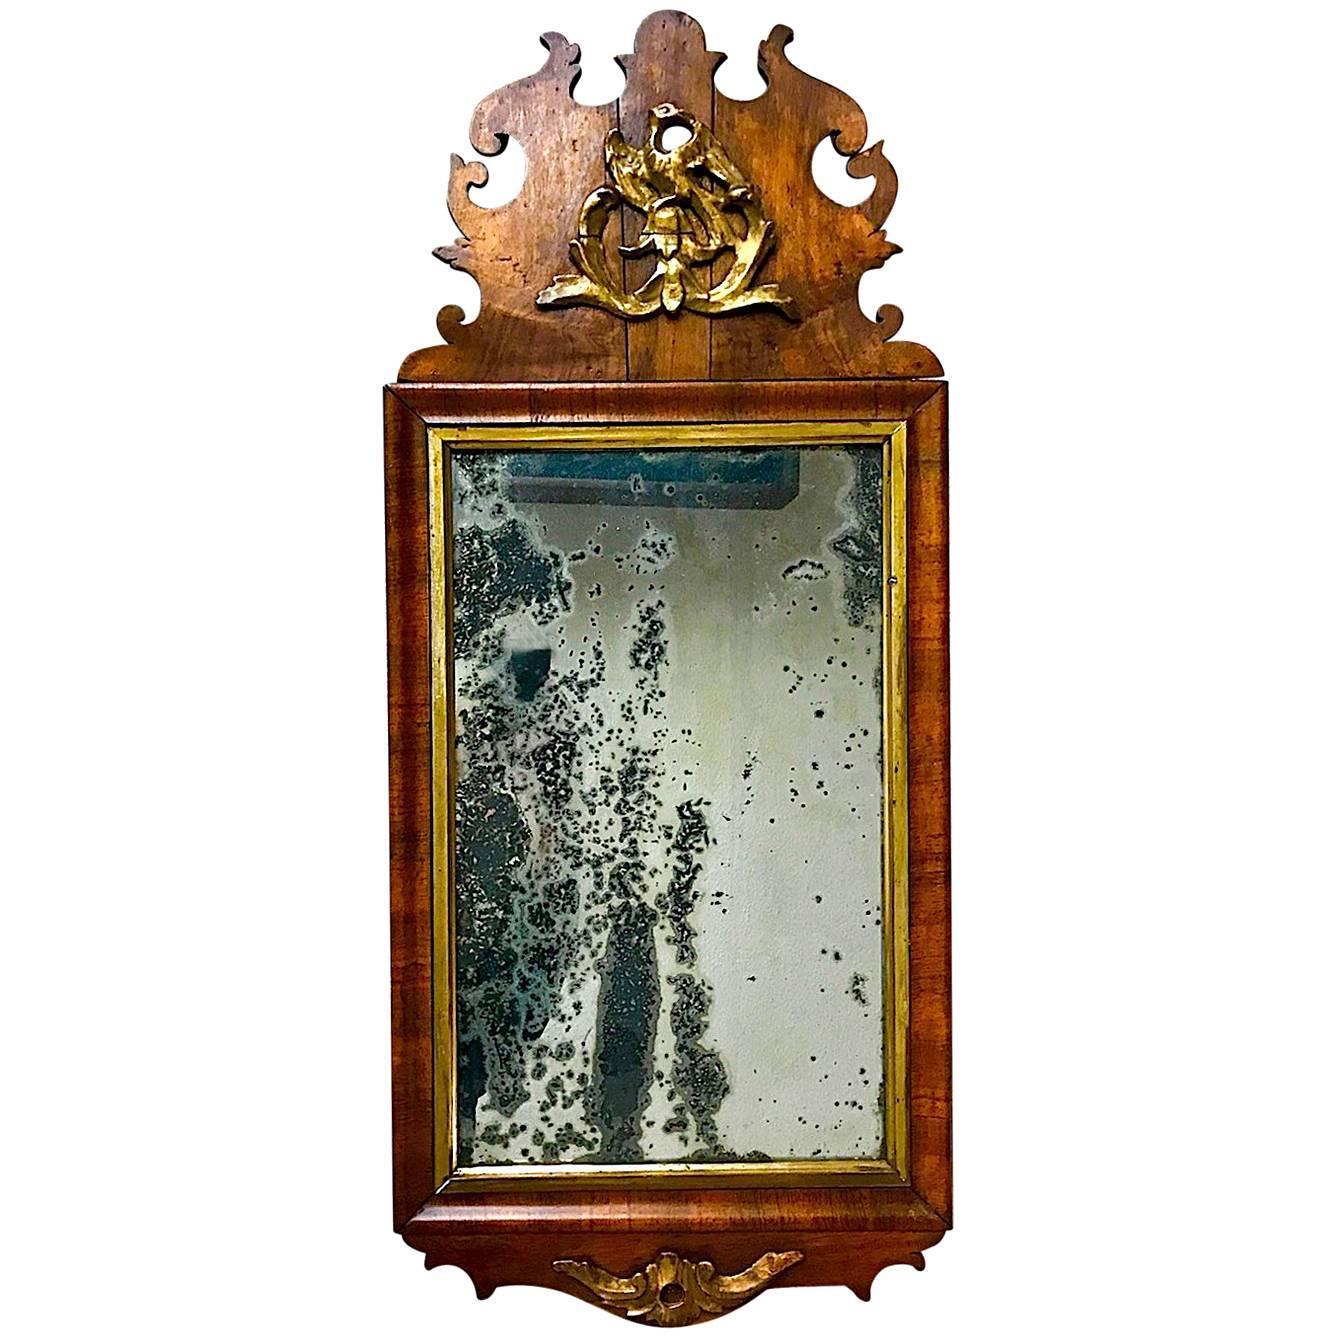 18th Century Queen Anne Period Mirror with Phoenix Design